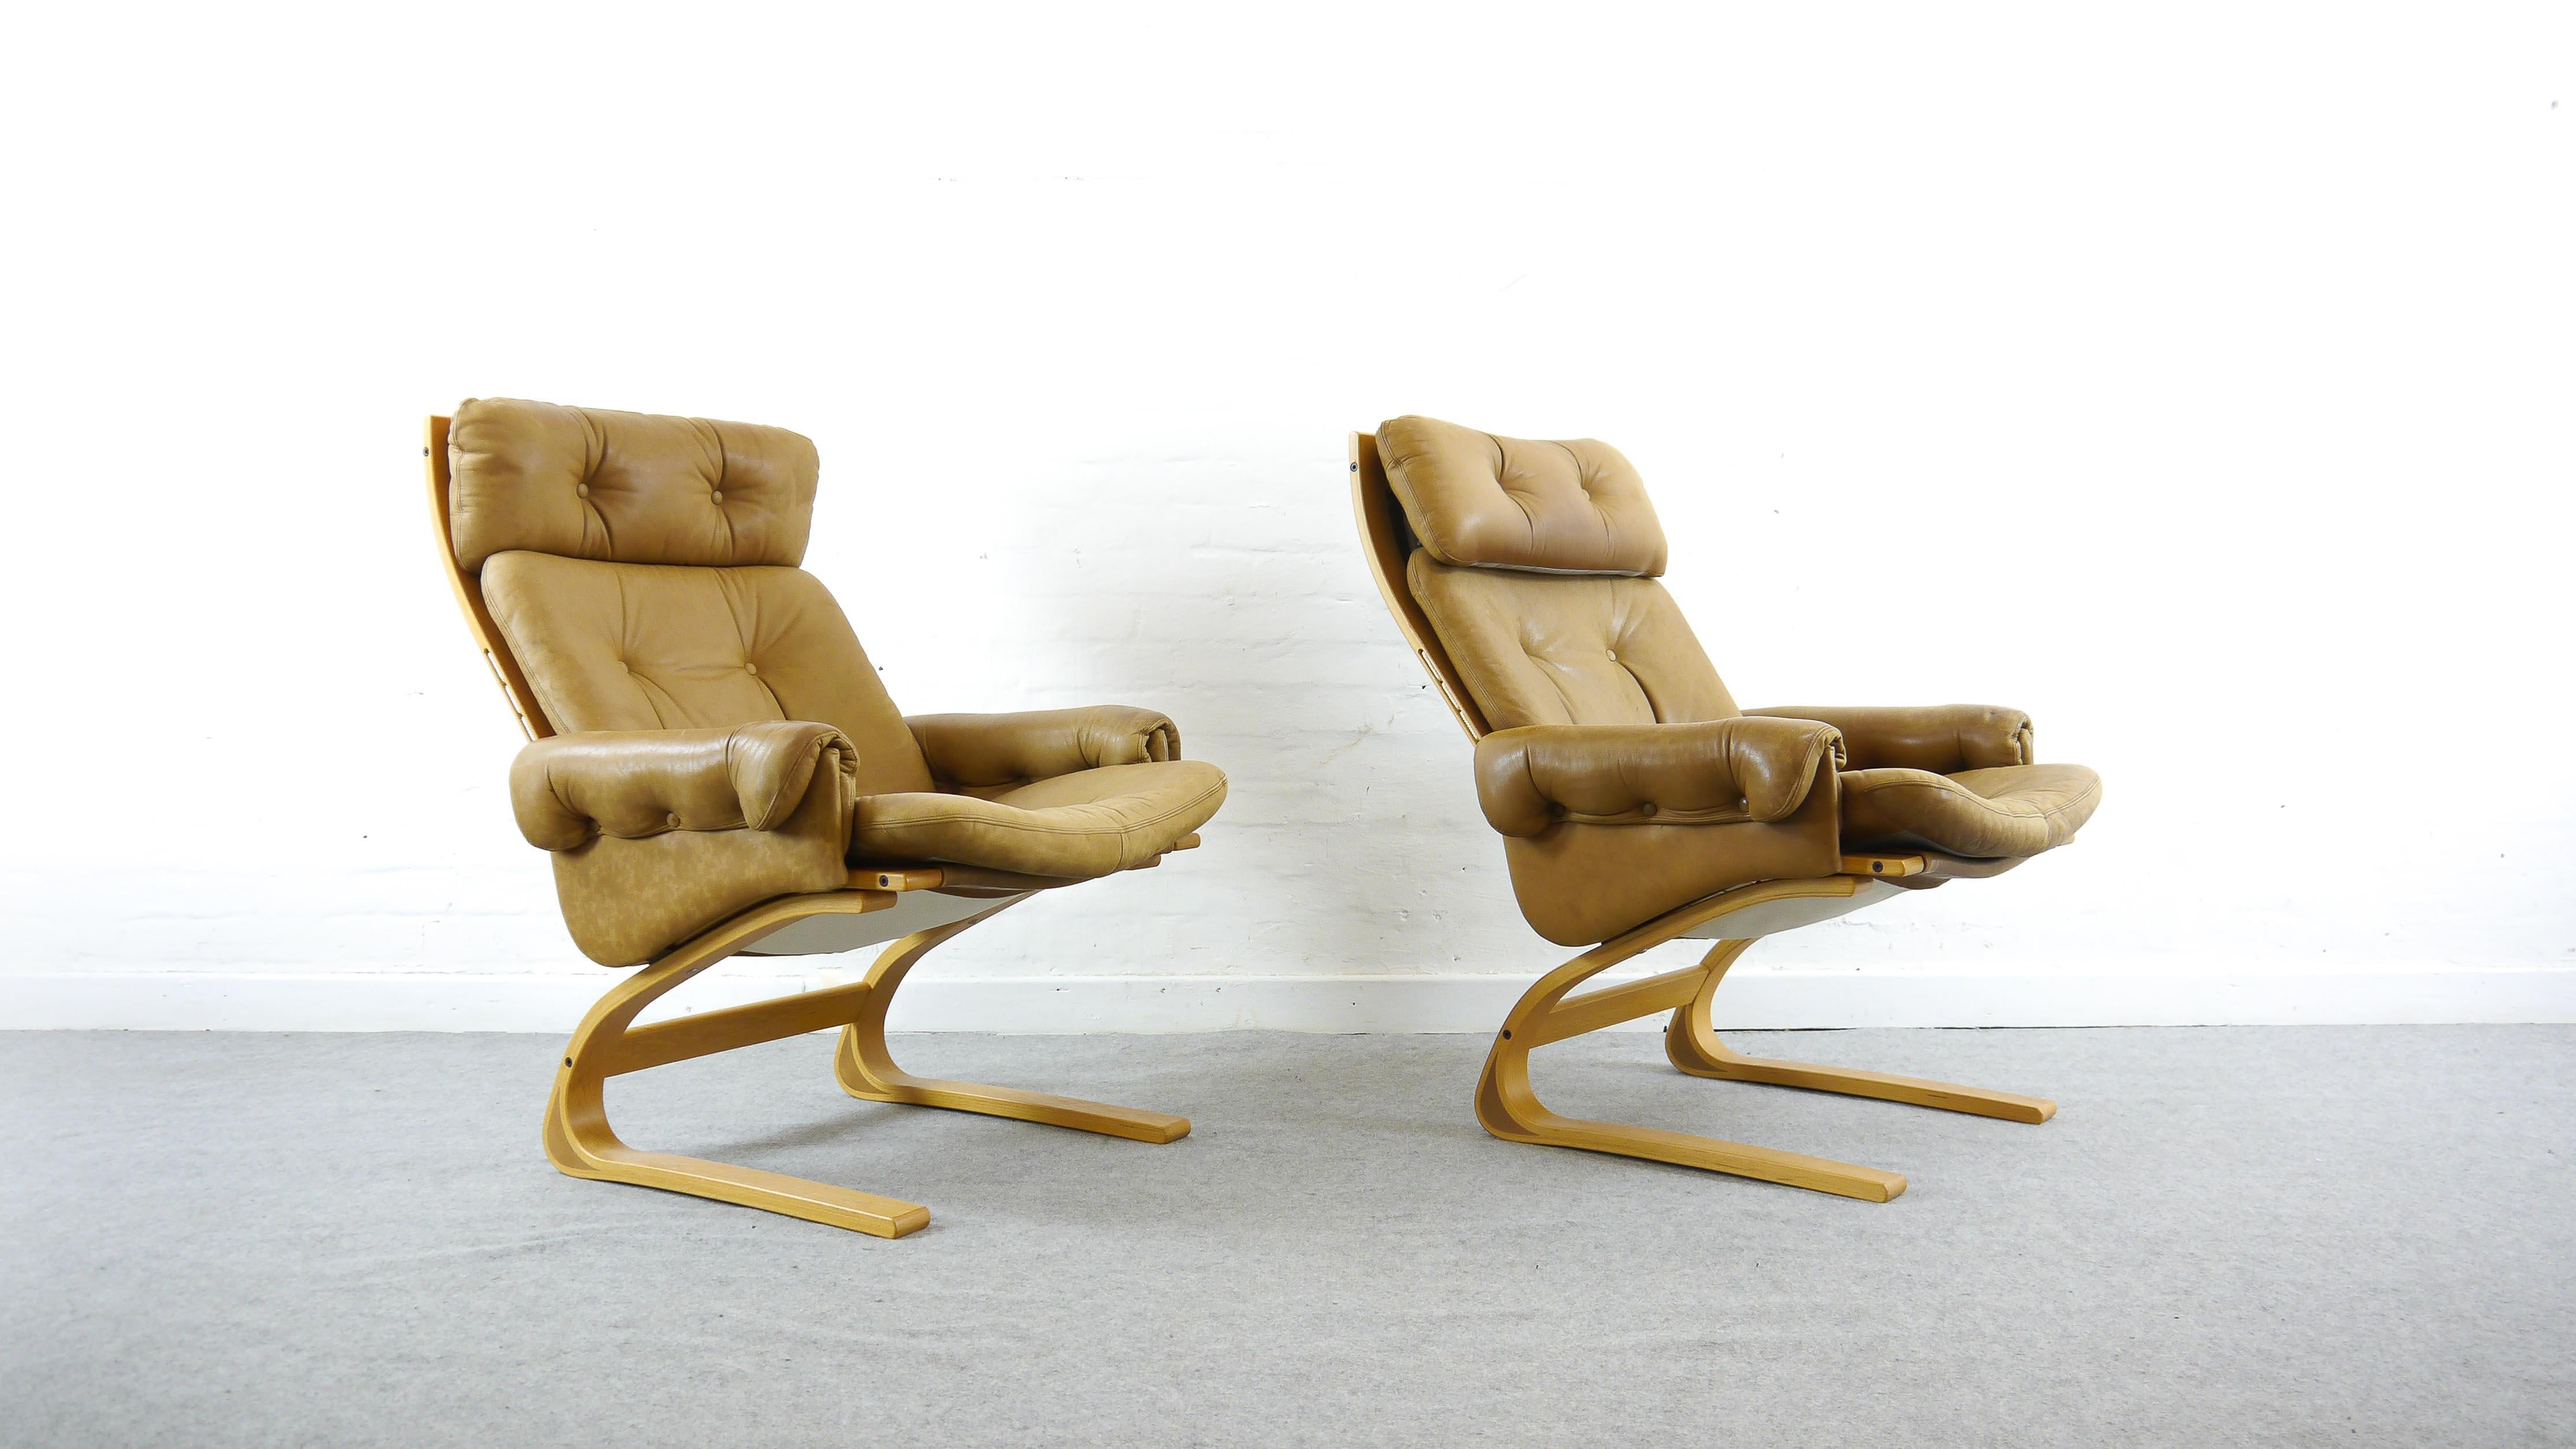 Paire (2) de chaises longues Kengu à haut dossier par Elsa et Nordahl Solheim. Fabriqué par Rybo Rykken & Co, Norvège, années 1970. Rembourré en cuir marron ou caramel d'origine. Construction en porte-à-faux en bois, toile et cuir. Très confortable.